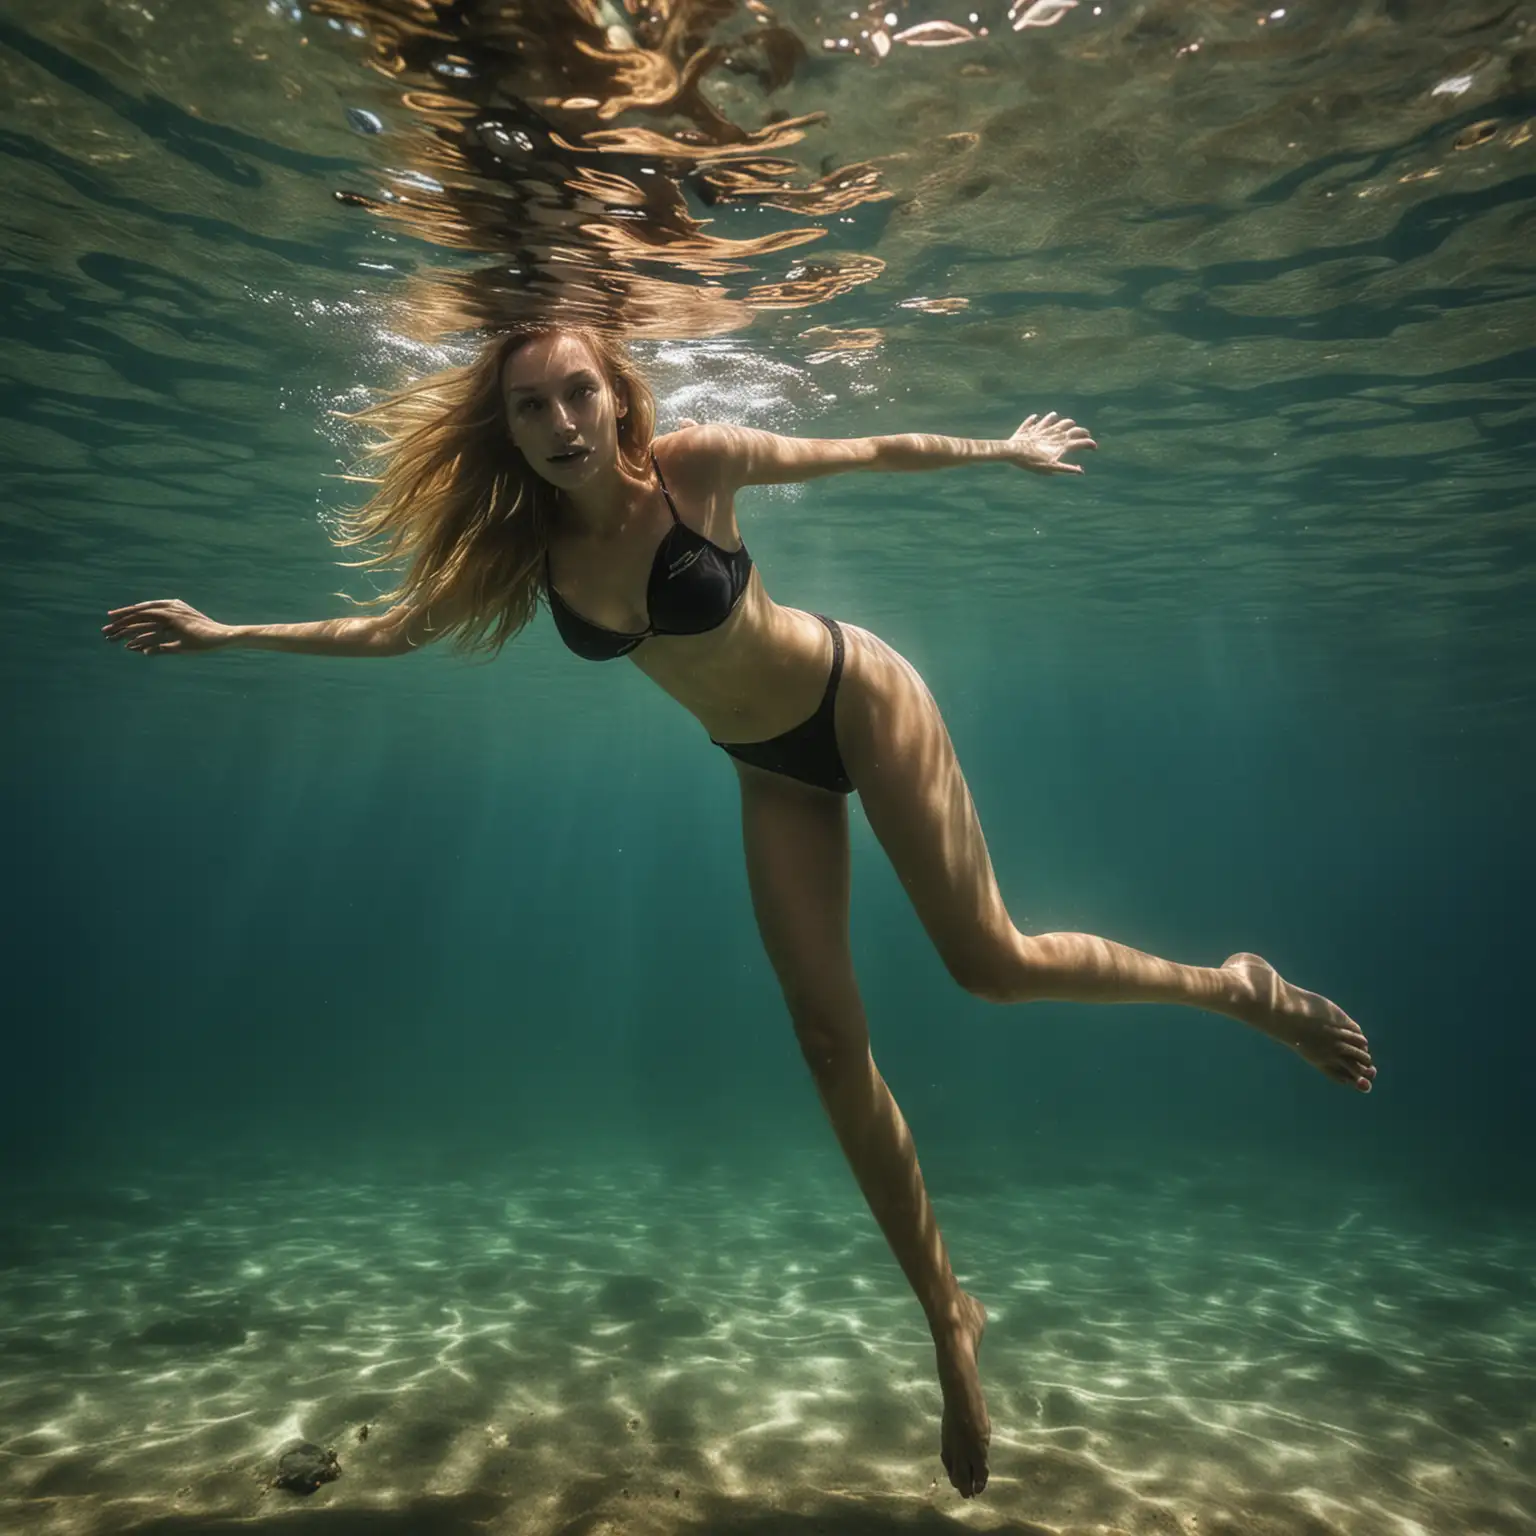 16 old dark blonde long legs girl underwater diving